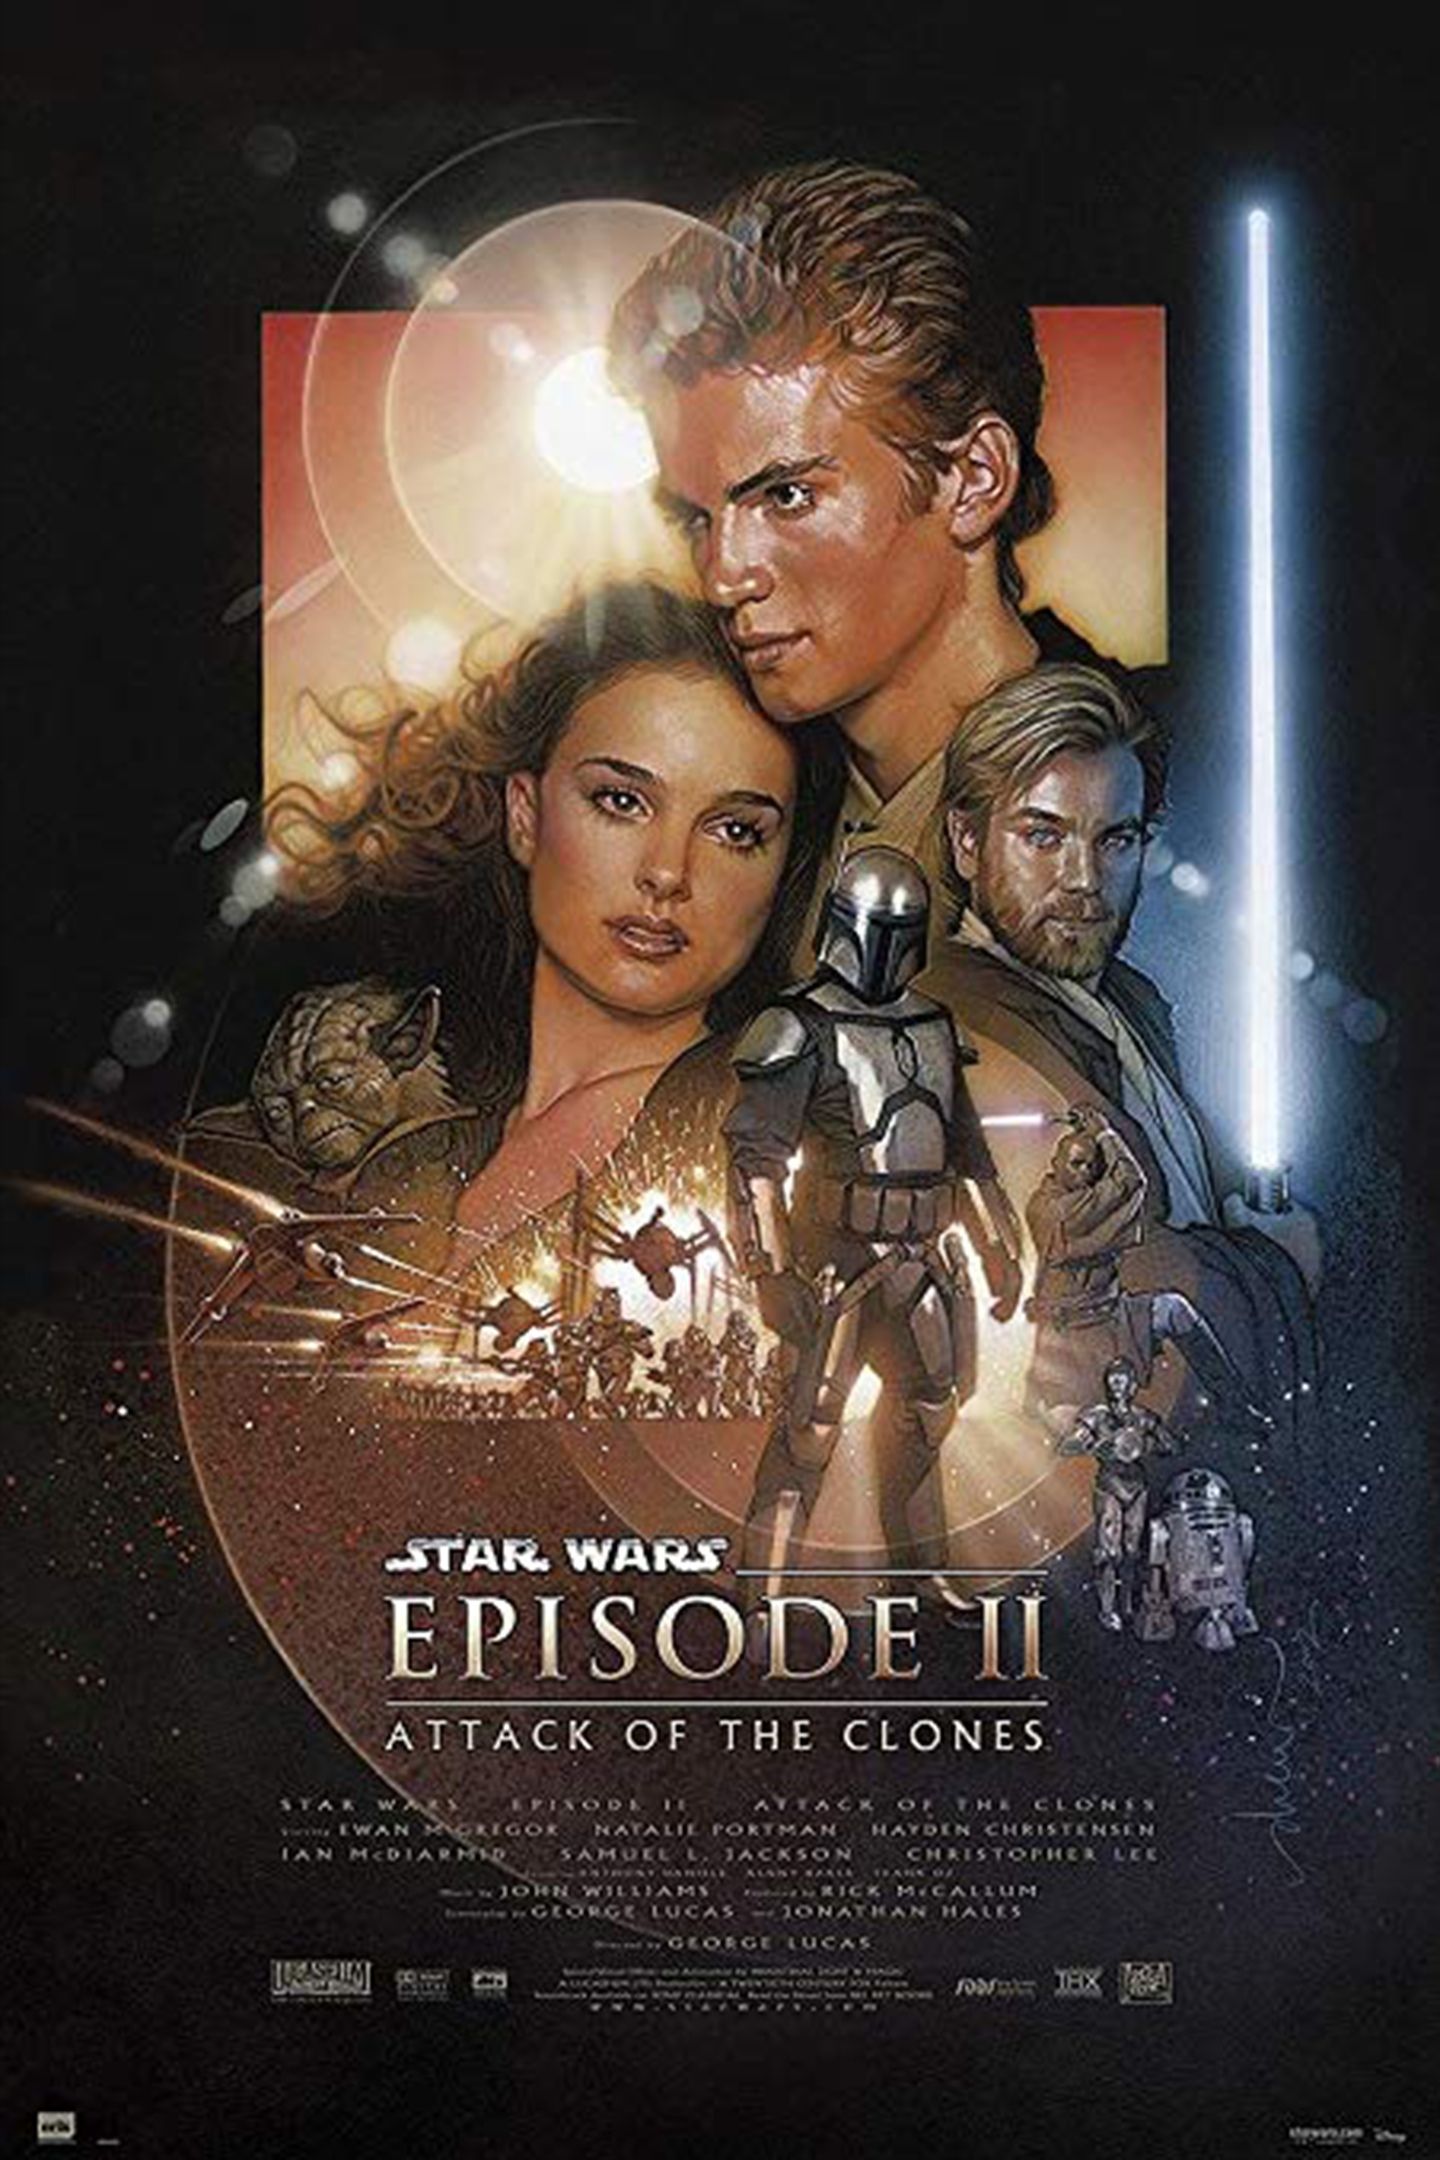 Оригинальный постер Star Wars &mdash; &laquo;Звездные войны. Эпизод II: Атака клонов&raquo;